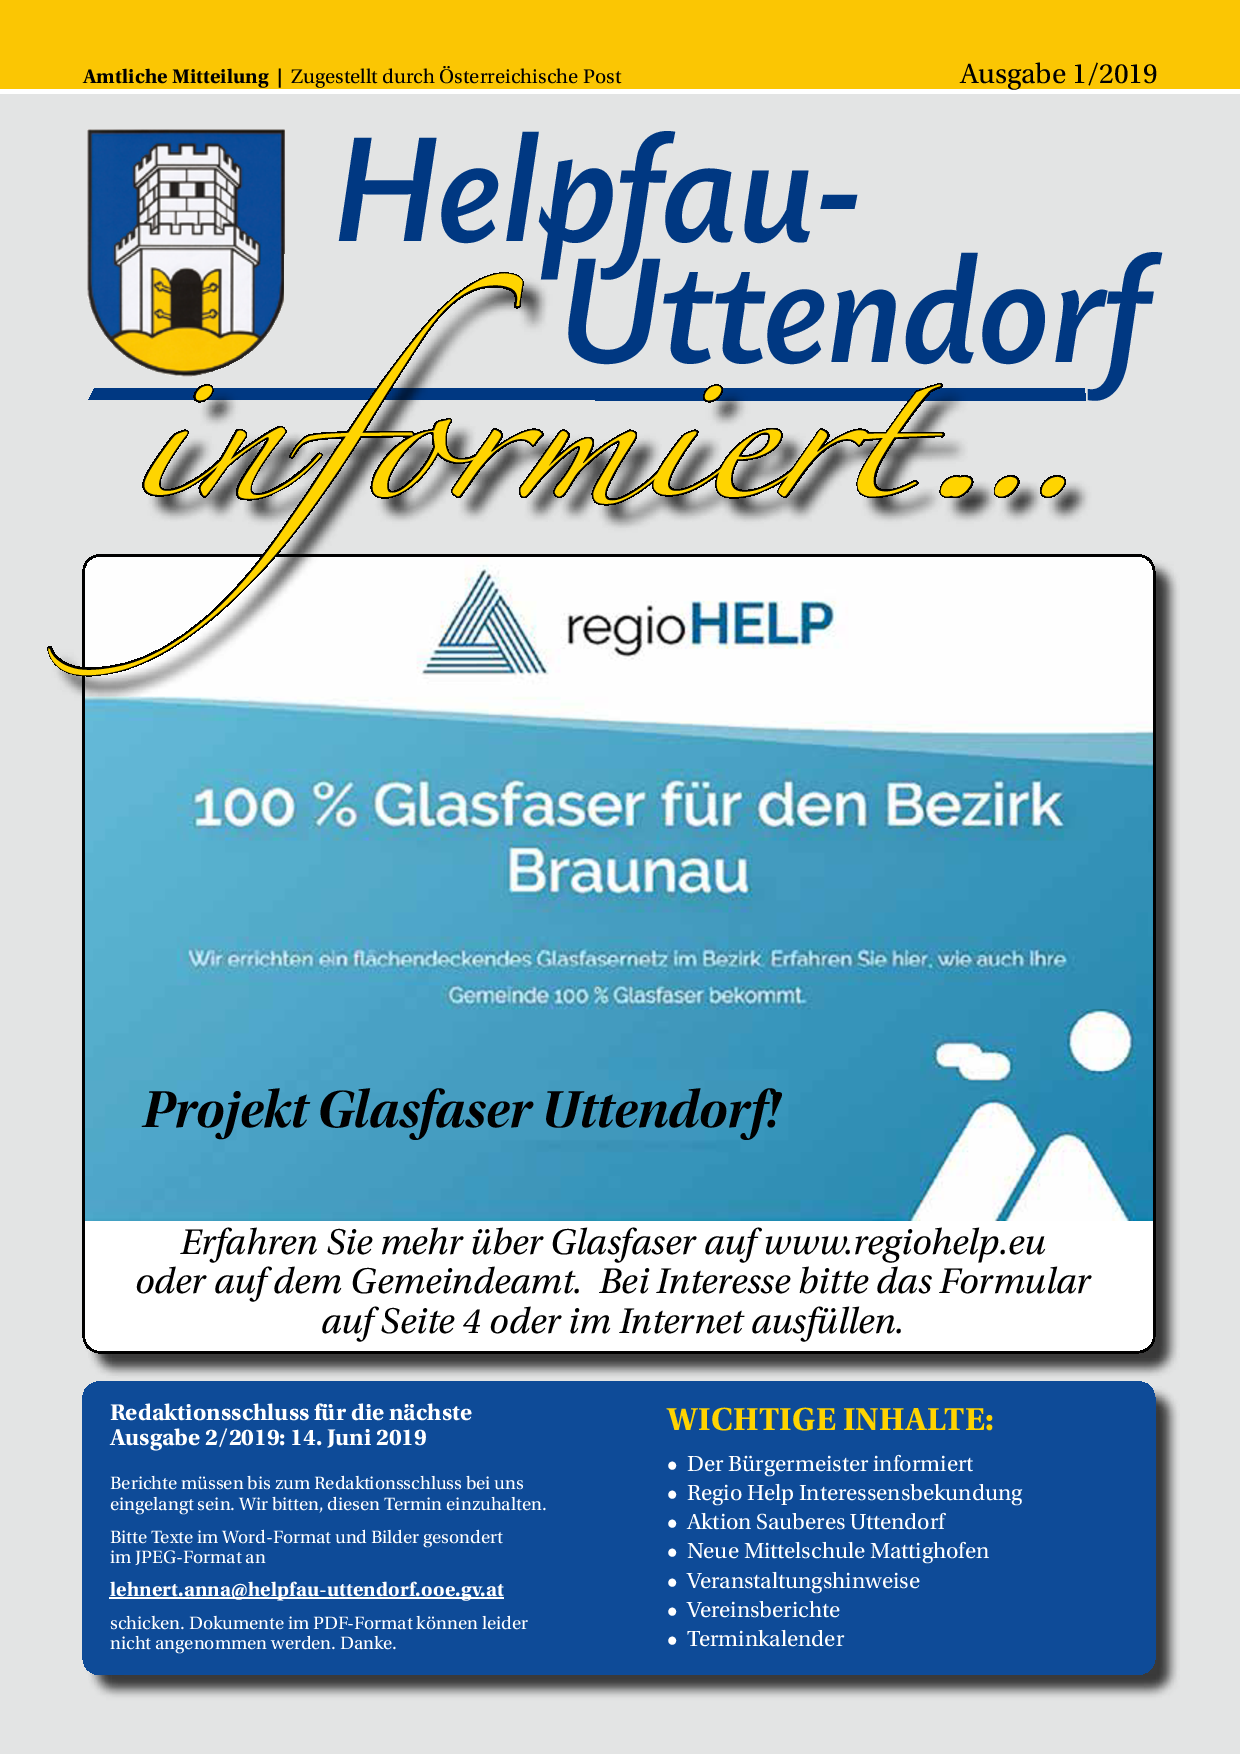 Uttendorf-Helpfau in der Region Braunau - menus2view.com